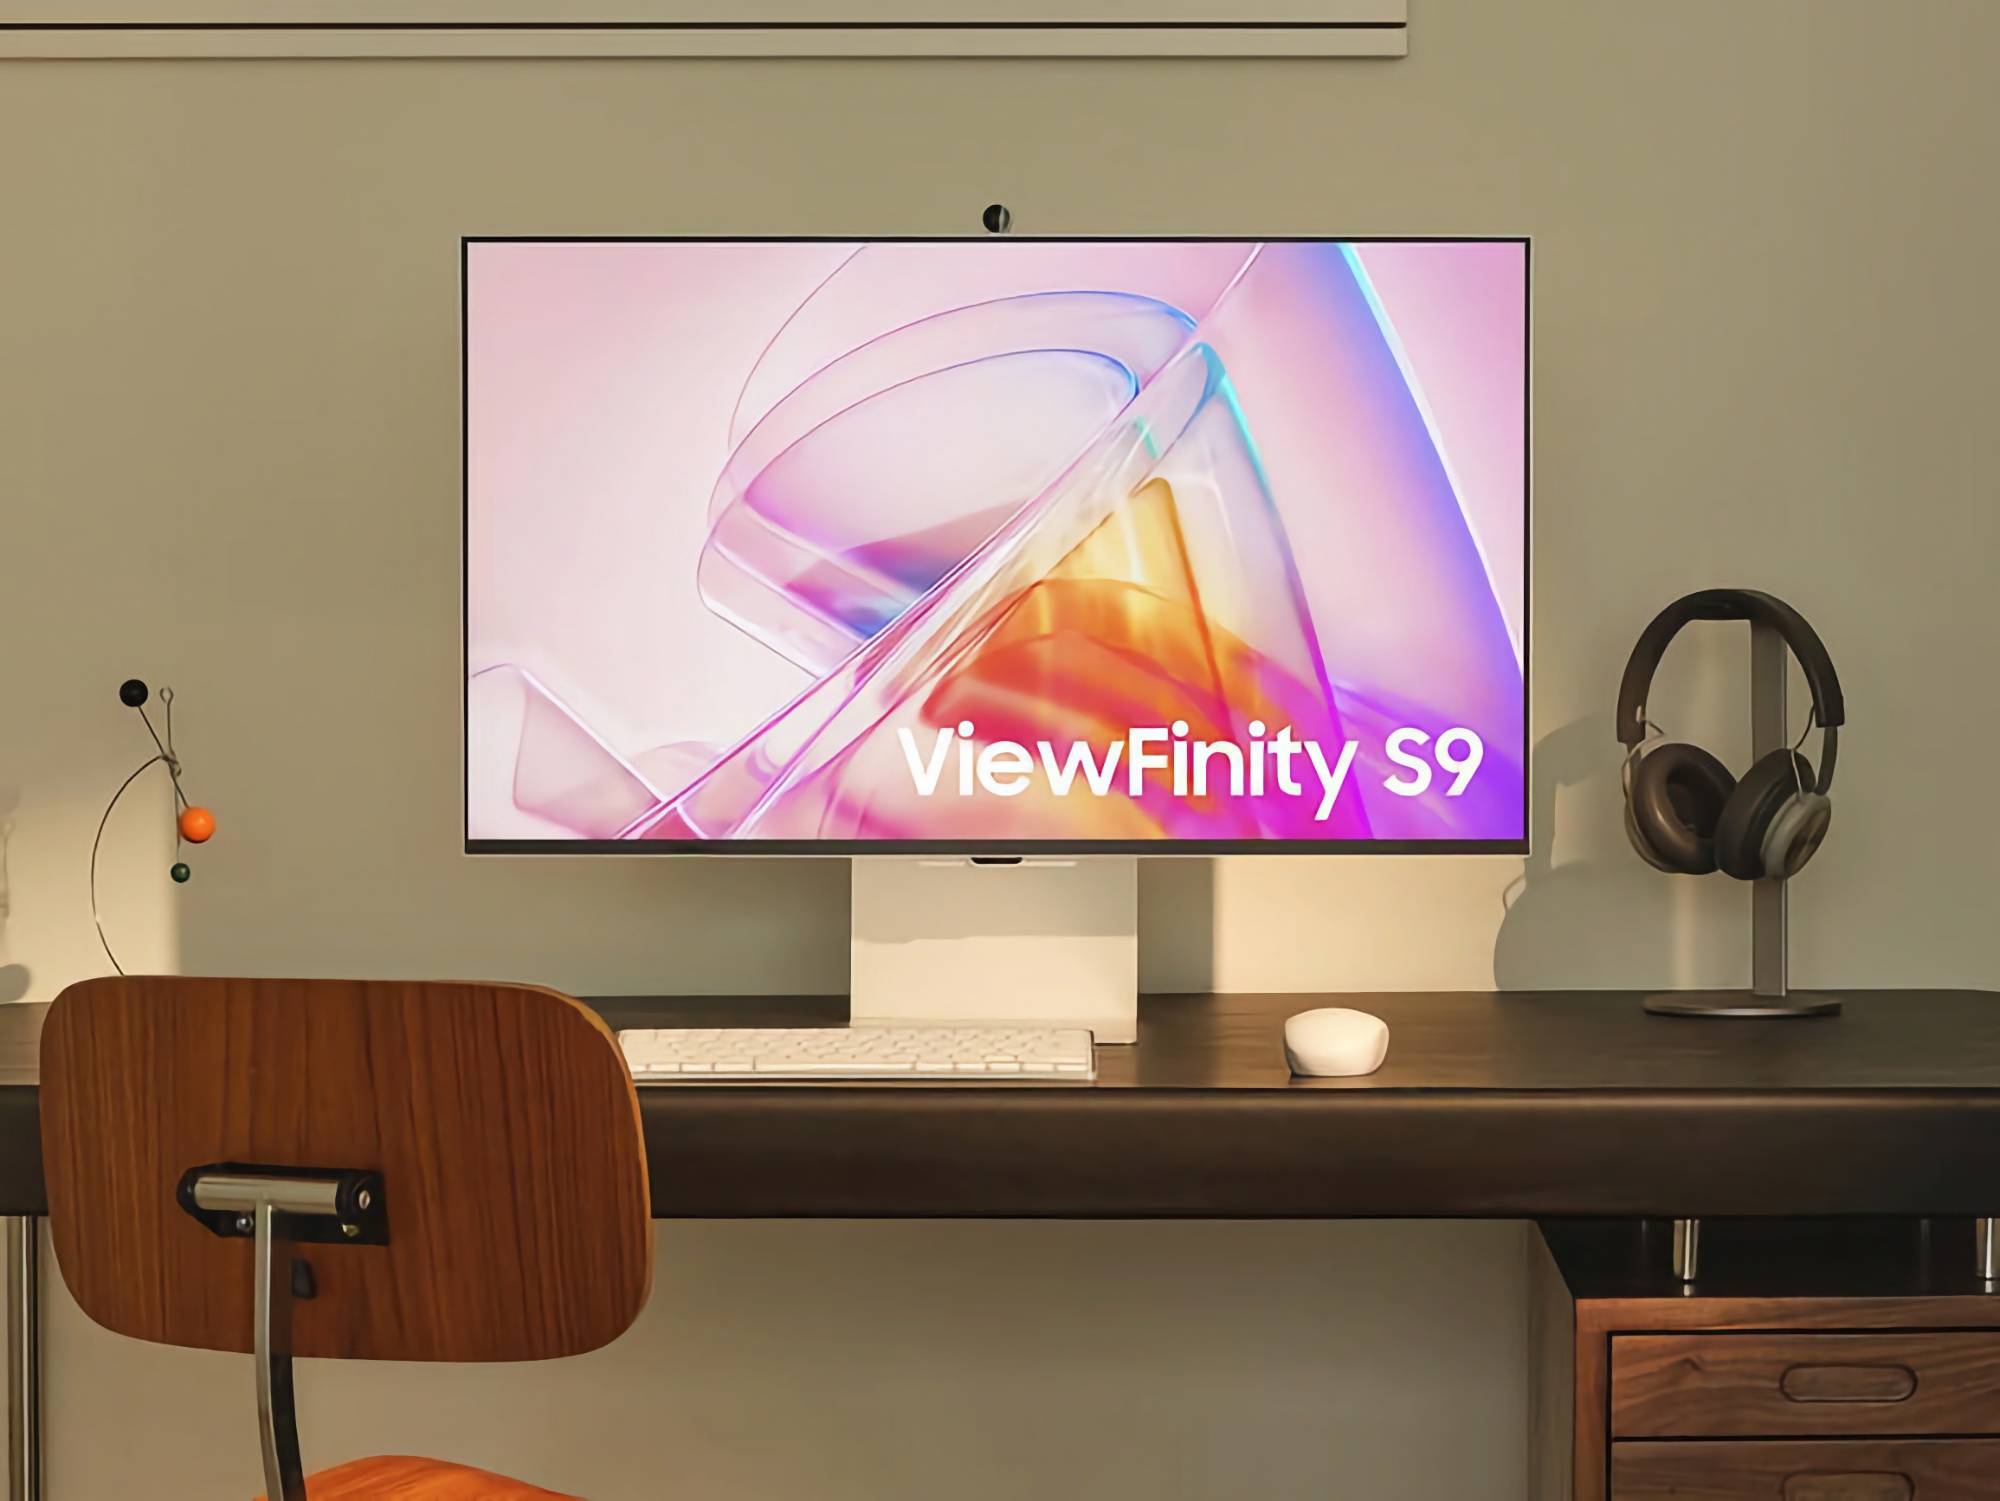 Le concurrent de l'Apple Studio Display : L'écran 5K ViewFinity S9 de Samsung lancé aux États-Unis